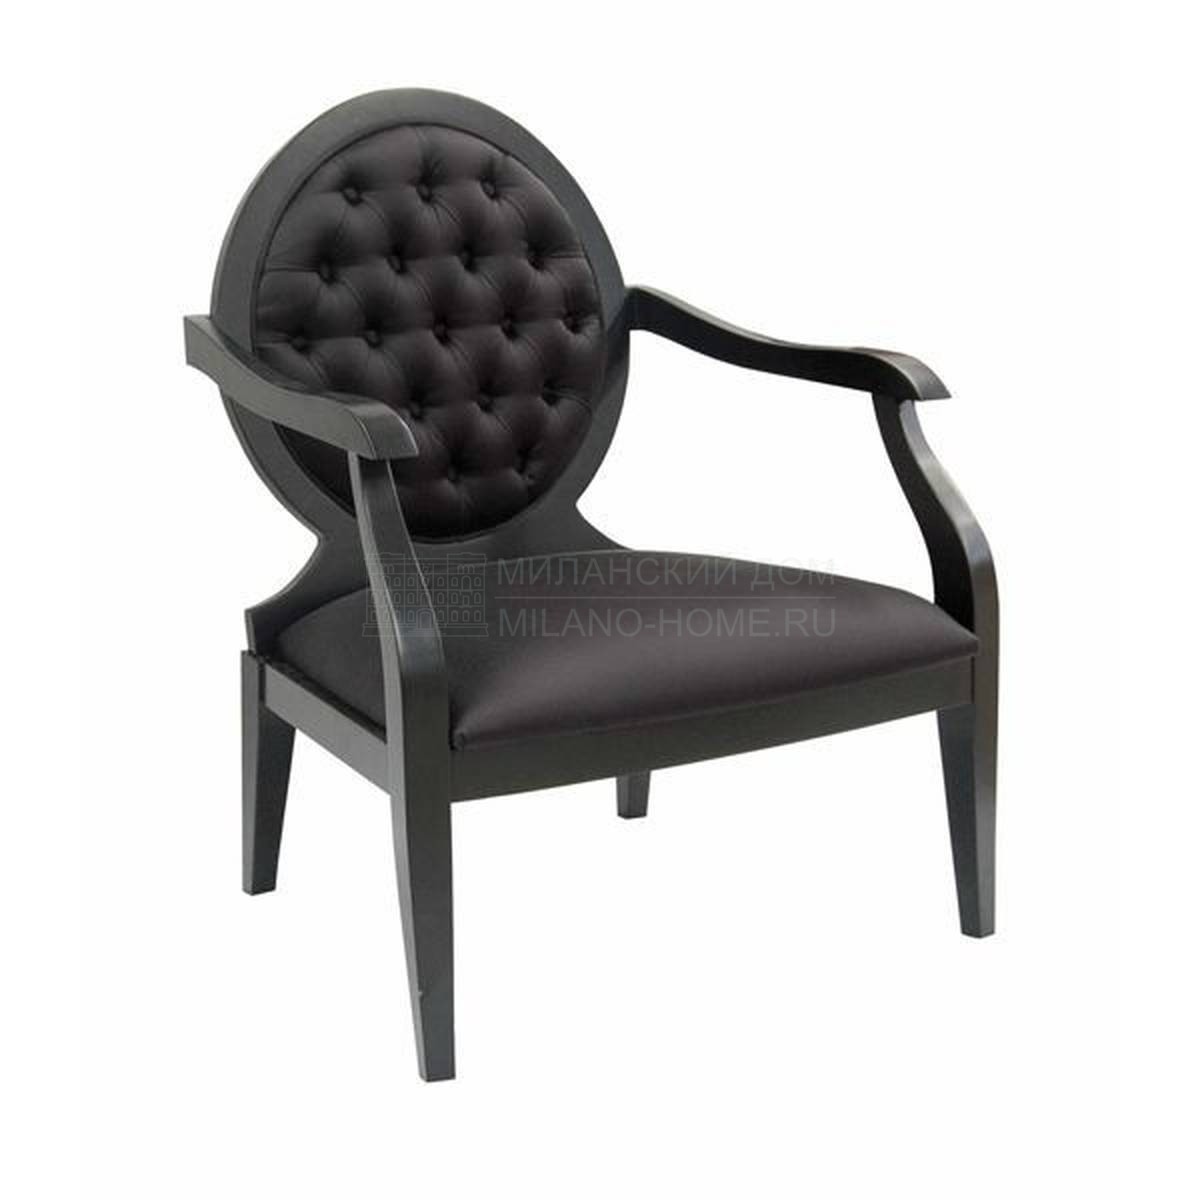 Кресло M-33451 armchair из Испании фабрики GUADARTE